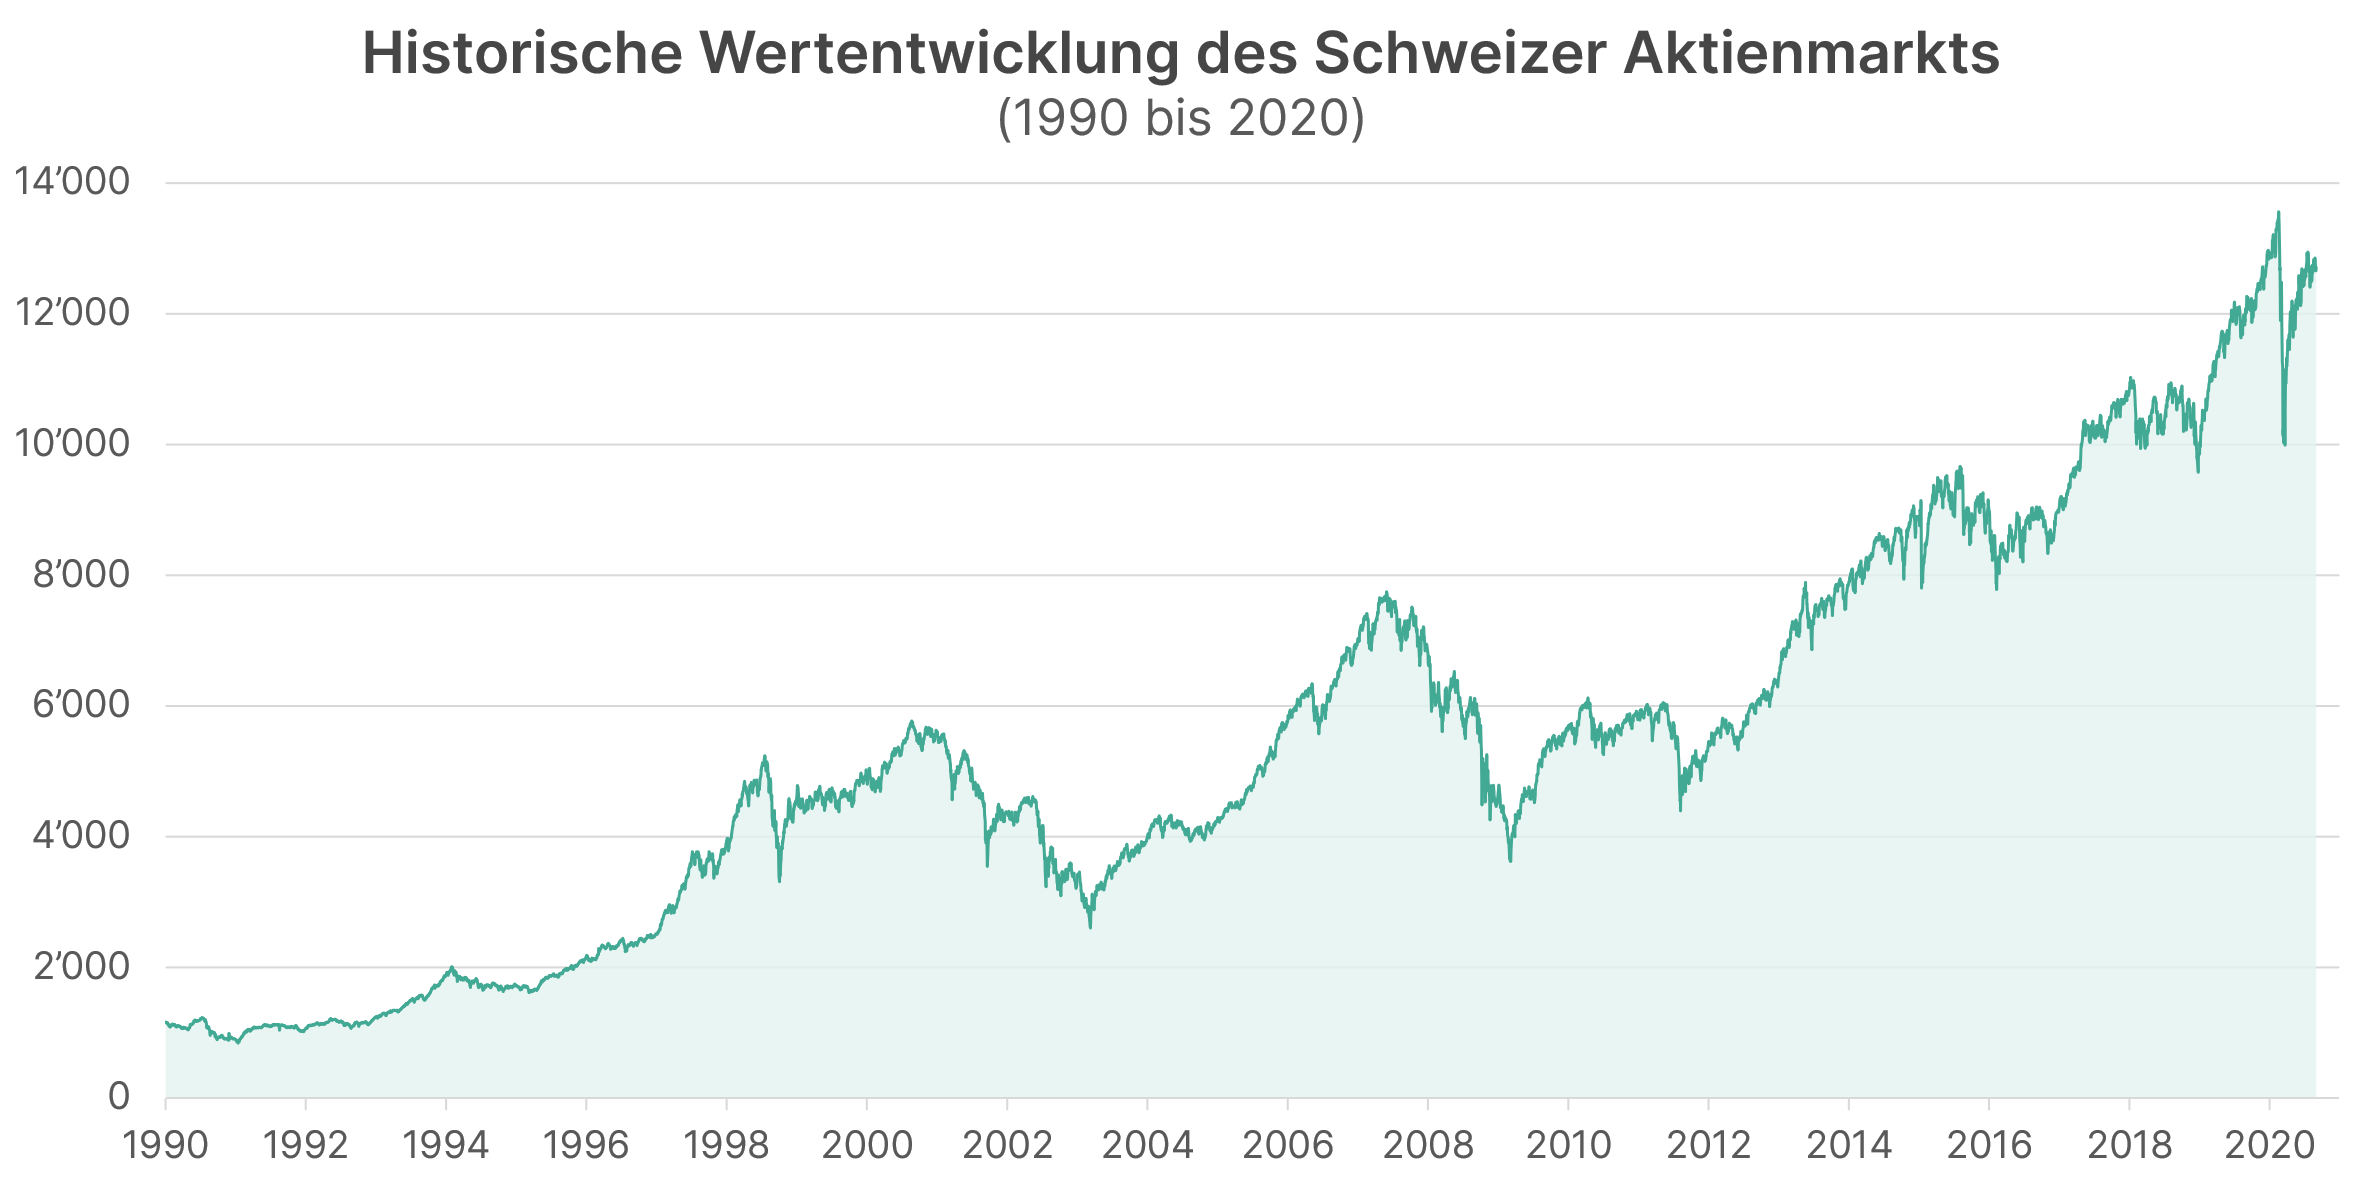 Historische Wertentwicklung des Schweizer Aktienmarktes dargestellt als Liniendiagramm von 1990 bis 2021. Zeigt ein Wertzuwachs von rund 1'000 Punkte auf rund 17'000